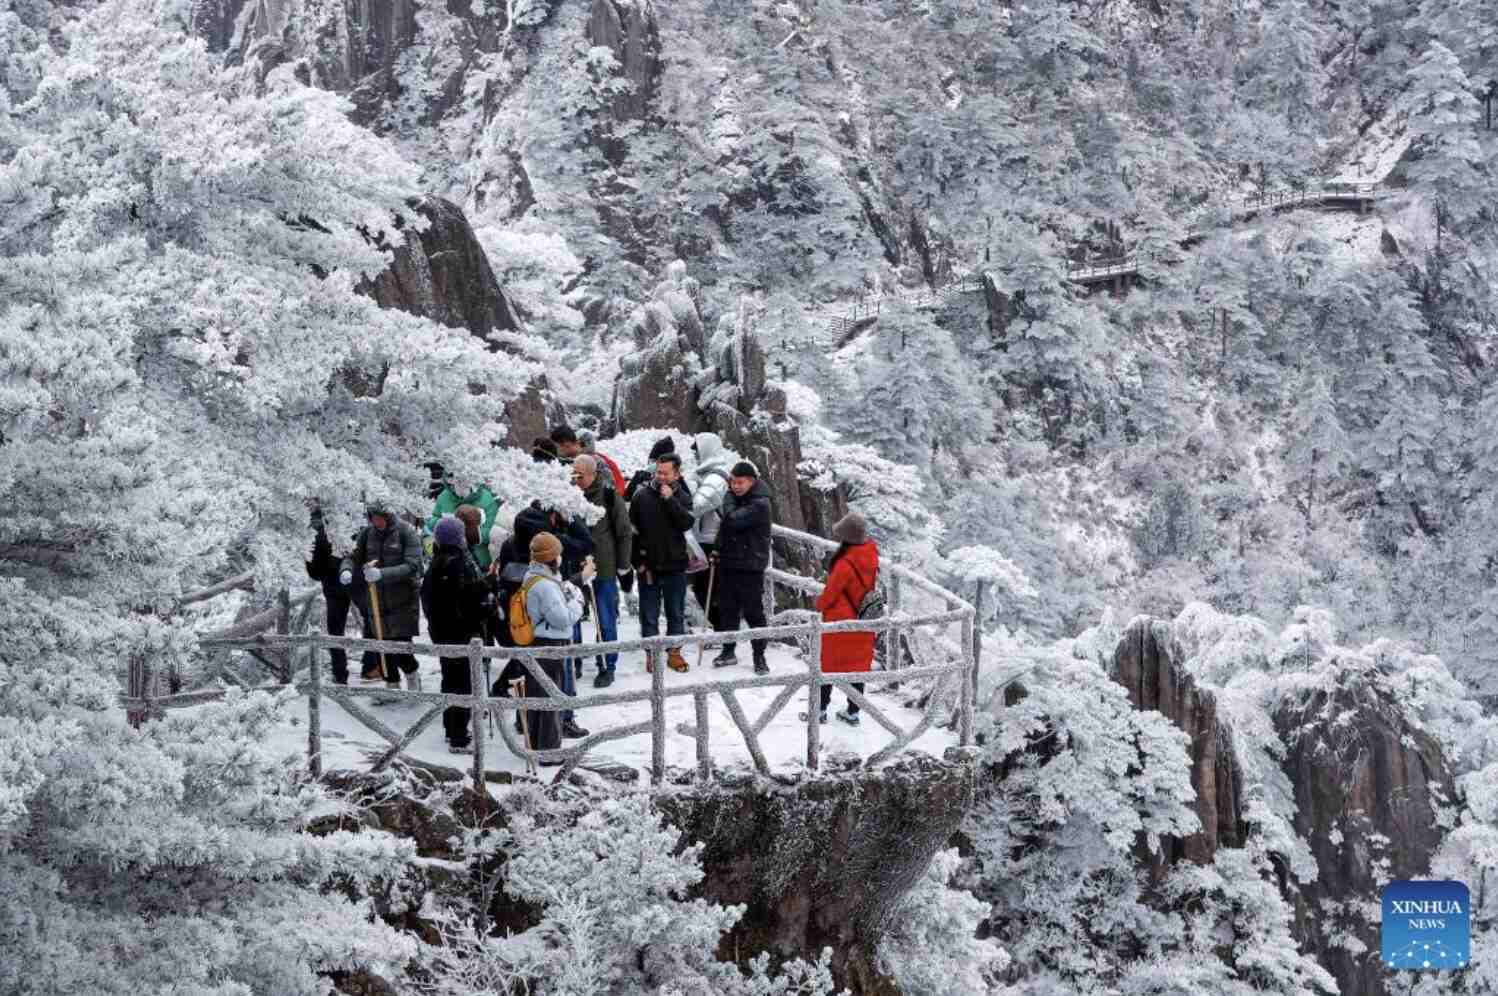 Tuyết phủ ở khu danh thắng Núi Hoàng Sơn, thành phố Hoàng Sơn, tỉnh An Huy, phía đông Trung Quốc ngày 16.12. Ảnh: Xinhua